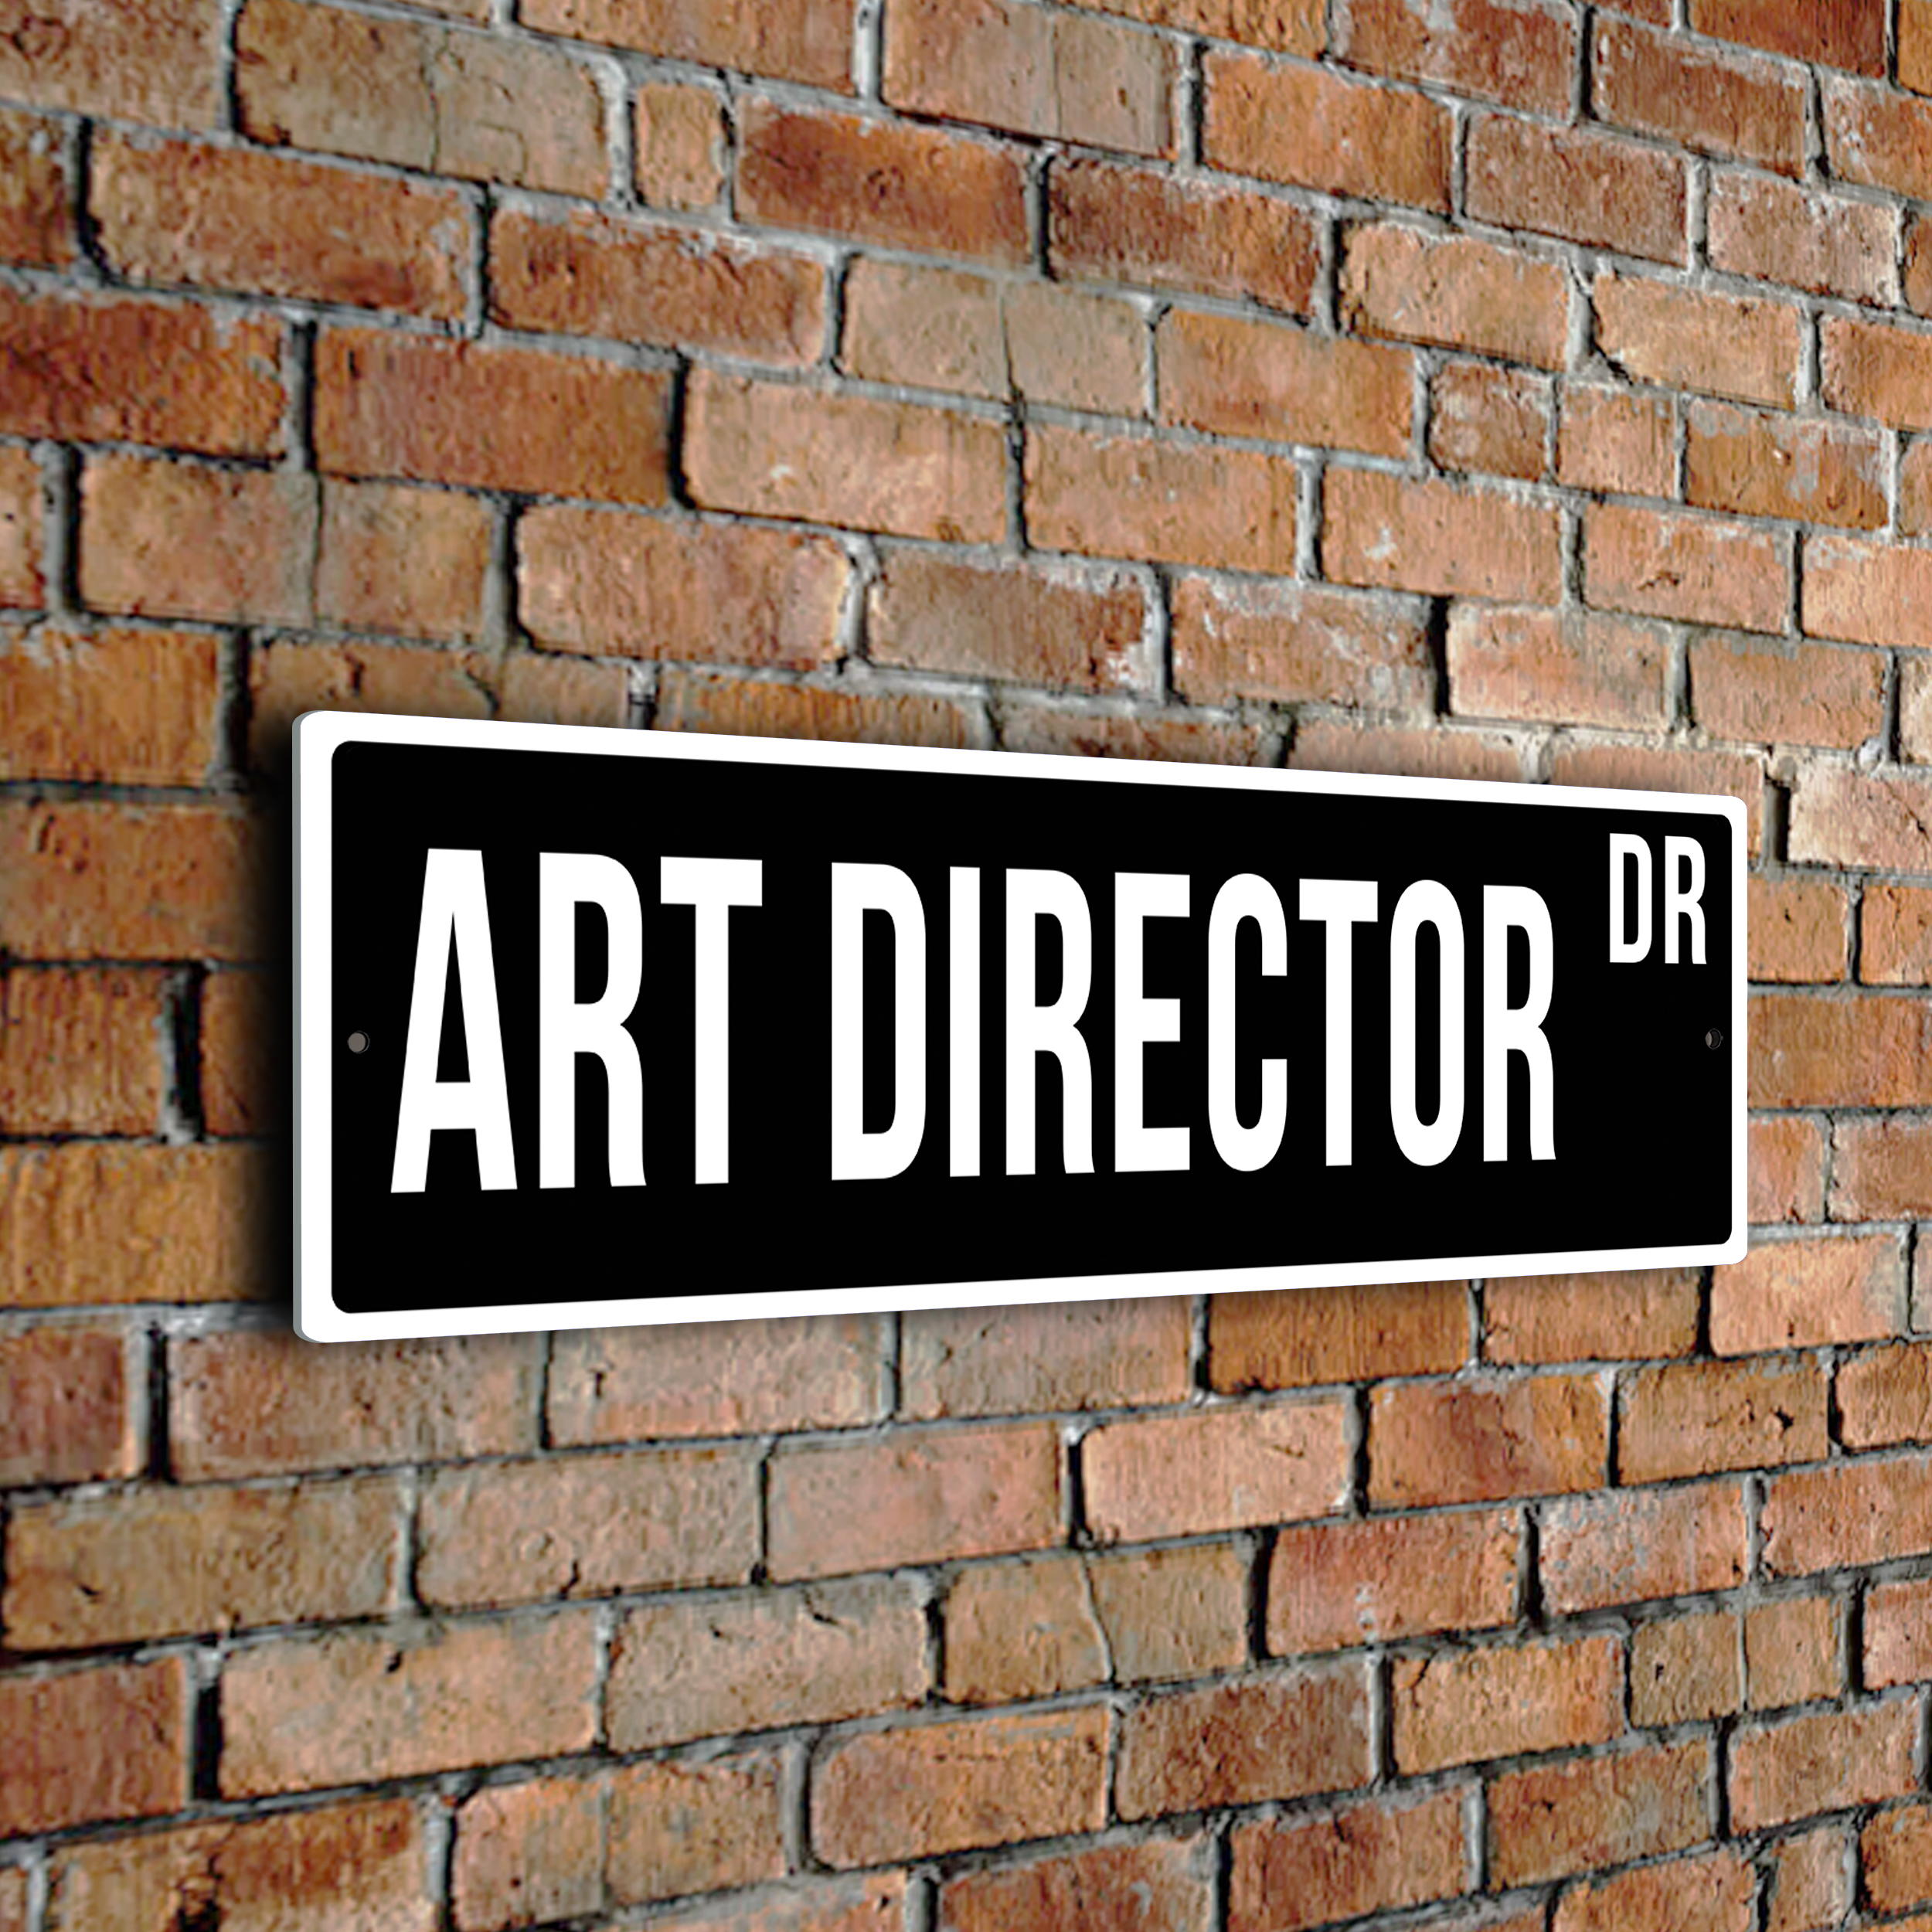 Art Director street sign